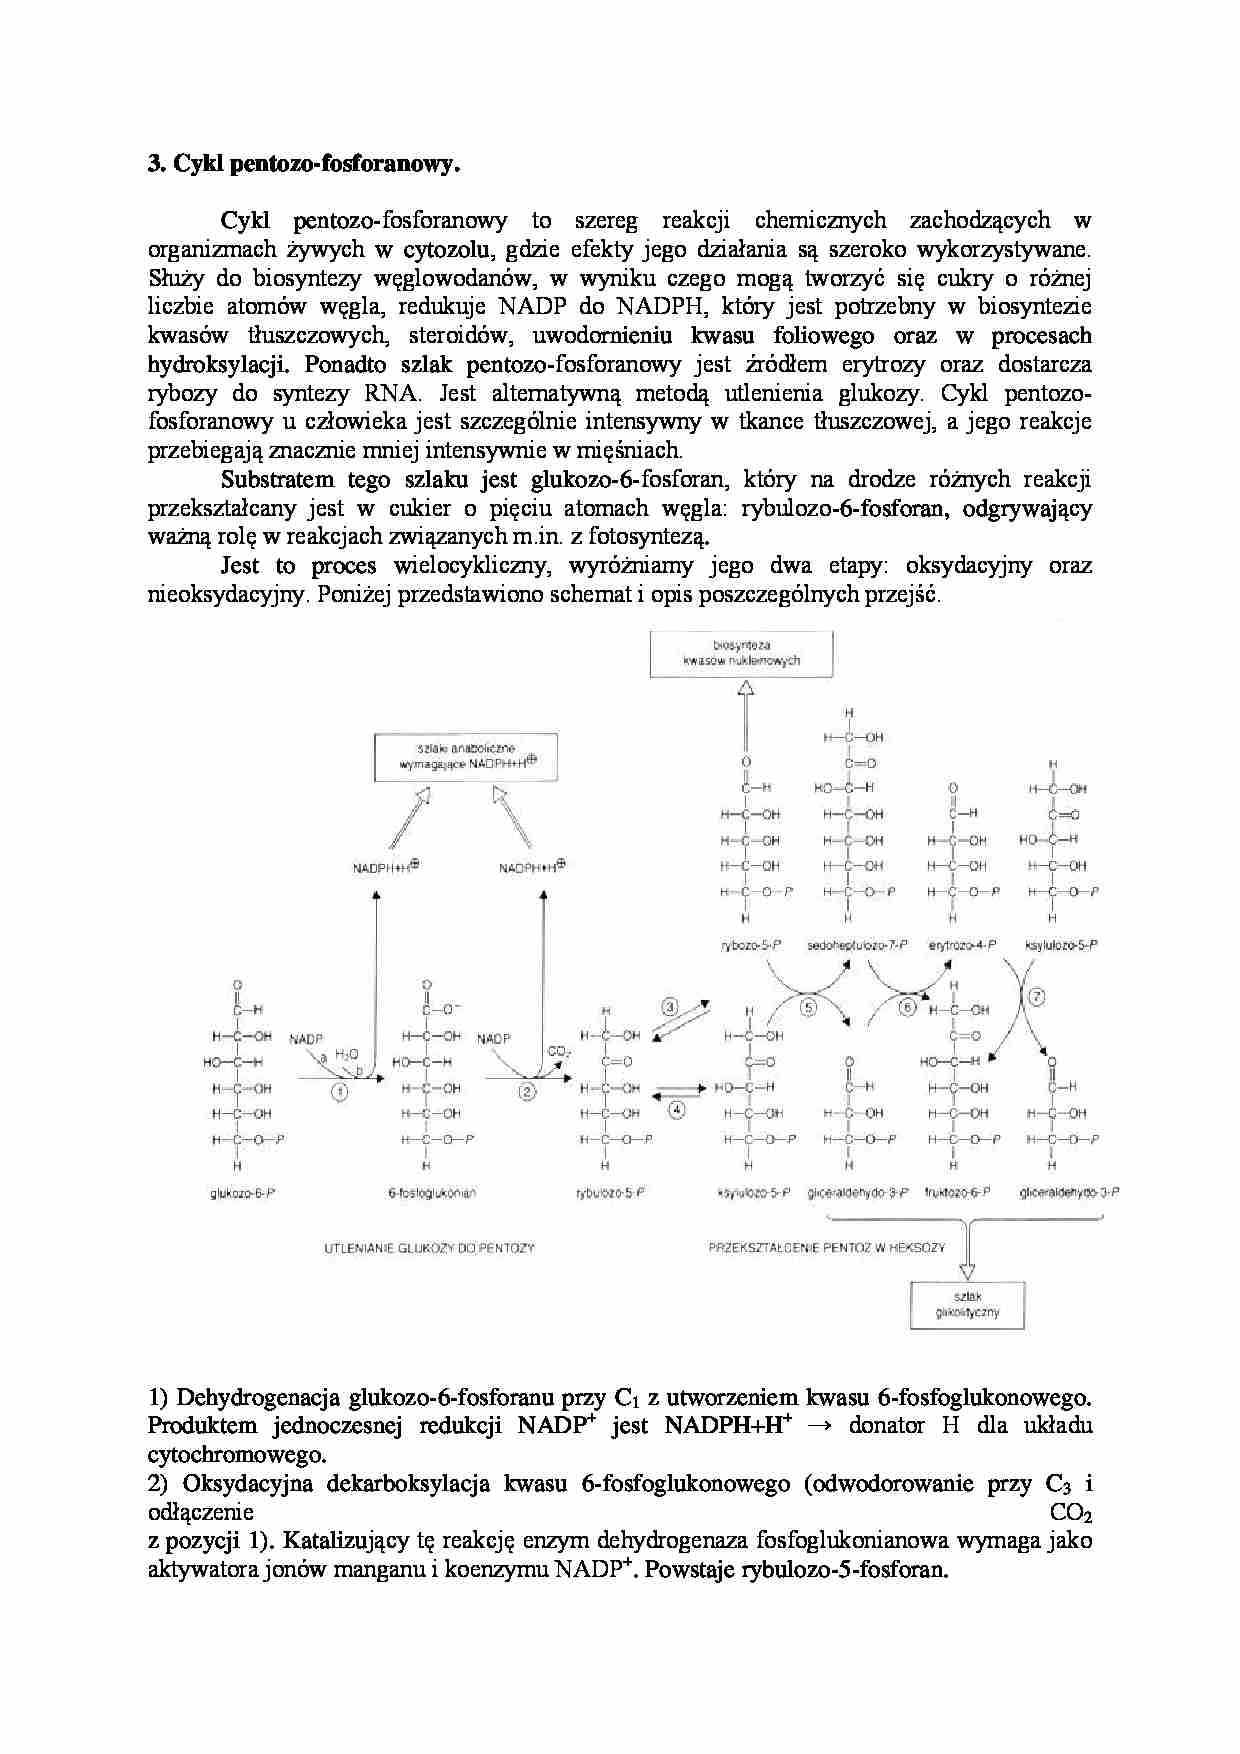 Cykl pentozo-fosforanowy - strona 1